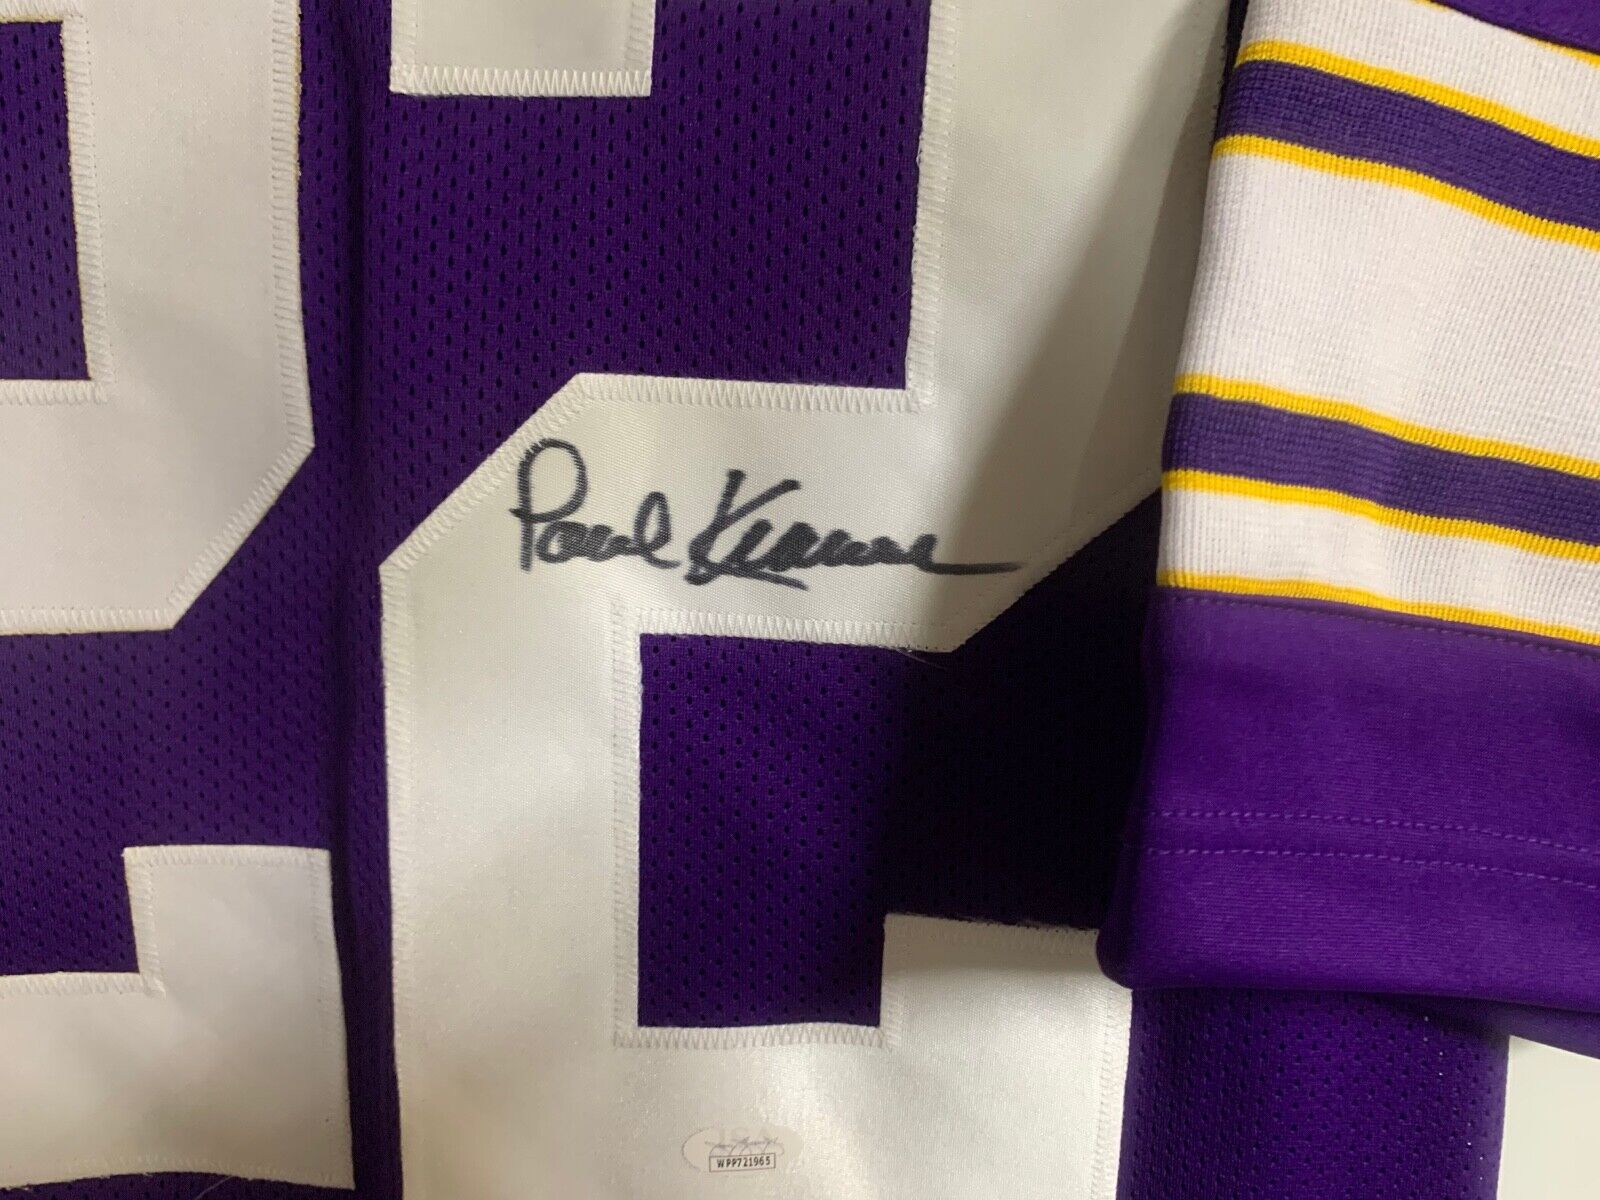 Paul Krause Minnesota Vikings Autographed Signed Custom Jersey JSA COA